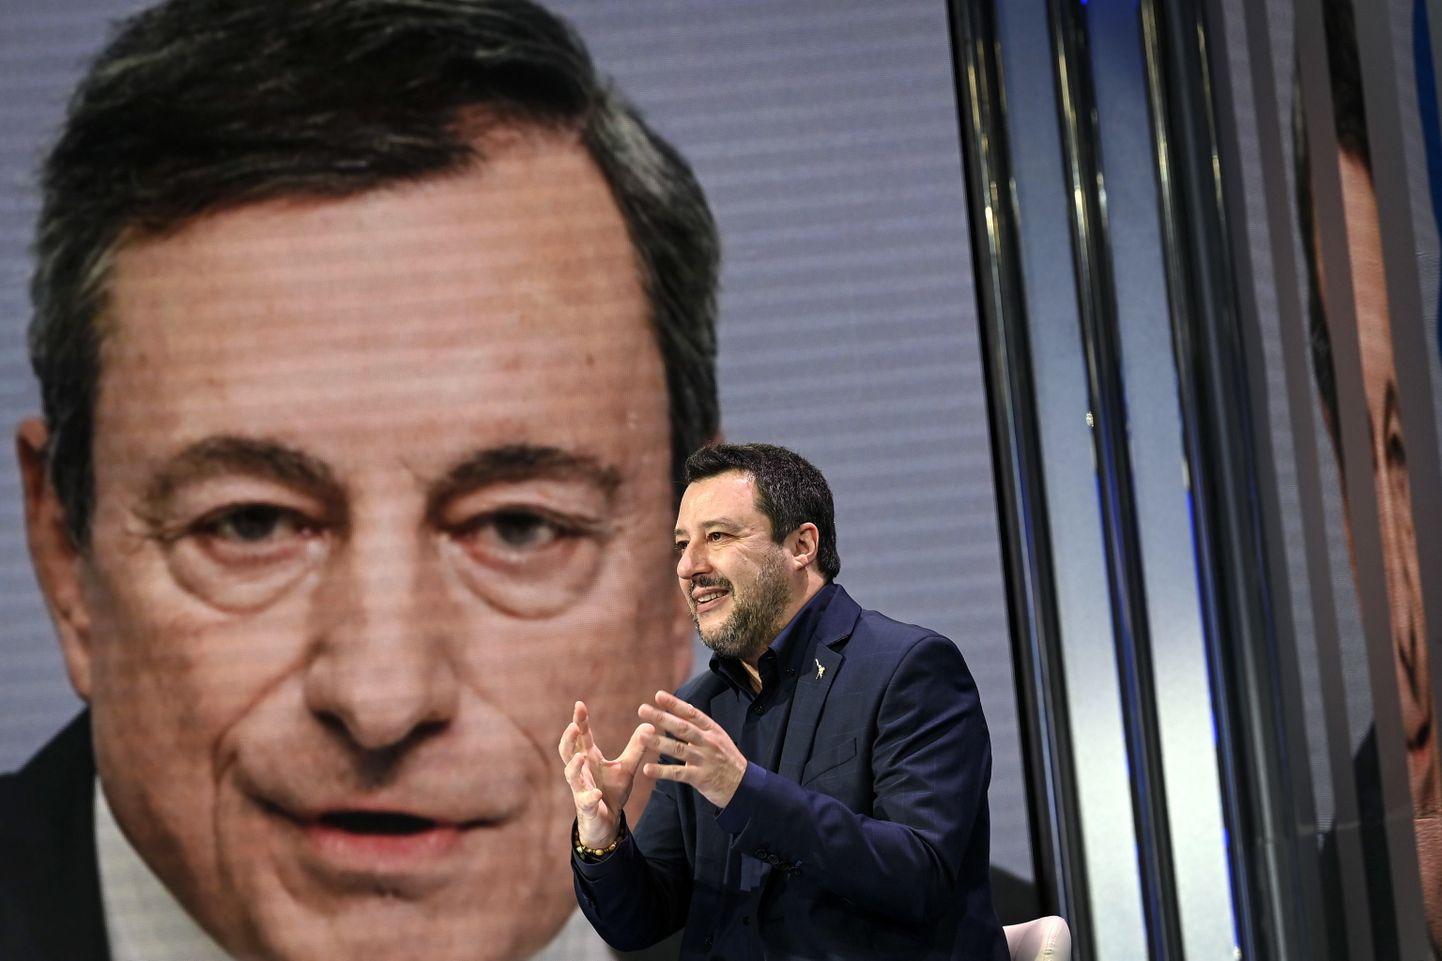 Liiga juht Matteo Salvini kõnelemas Mario Draghi pildi ees.